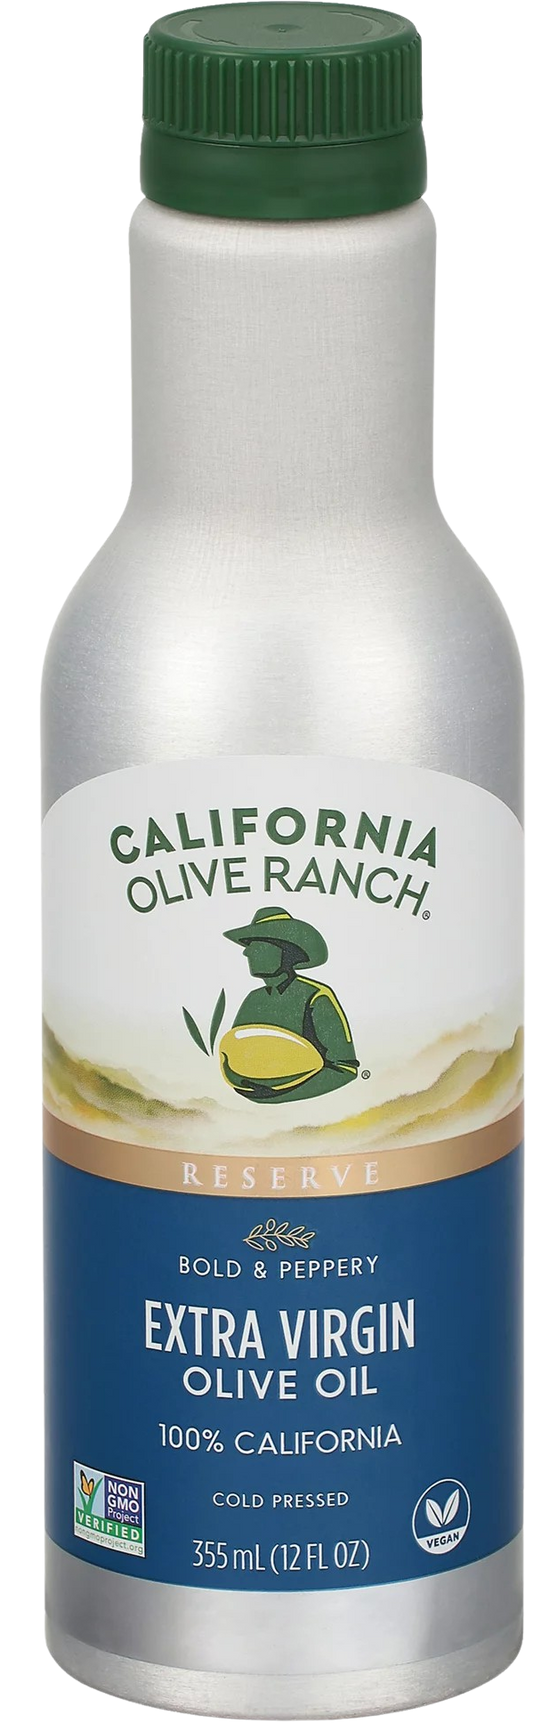 Reserve Miller's Olive Oil